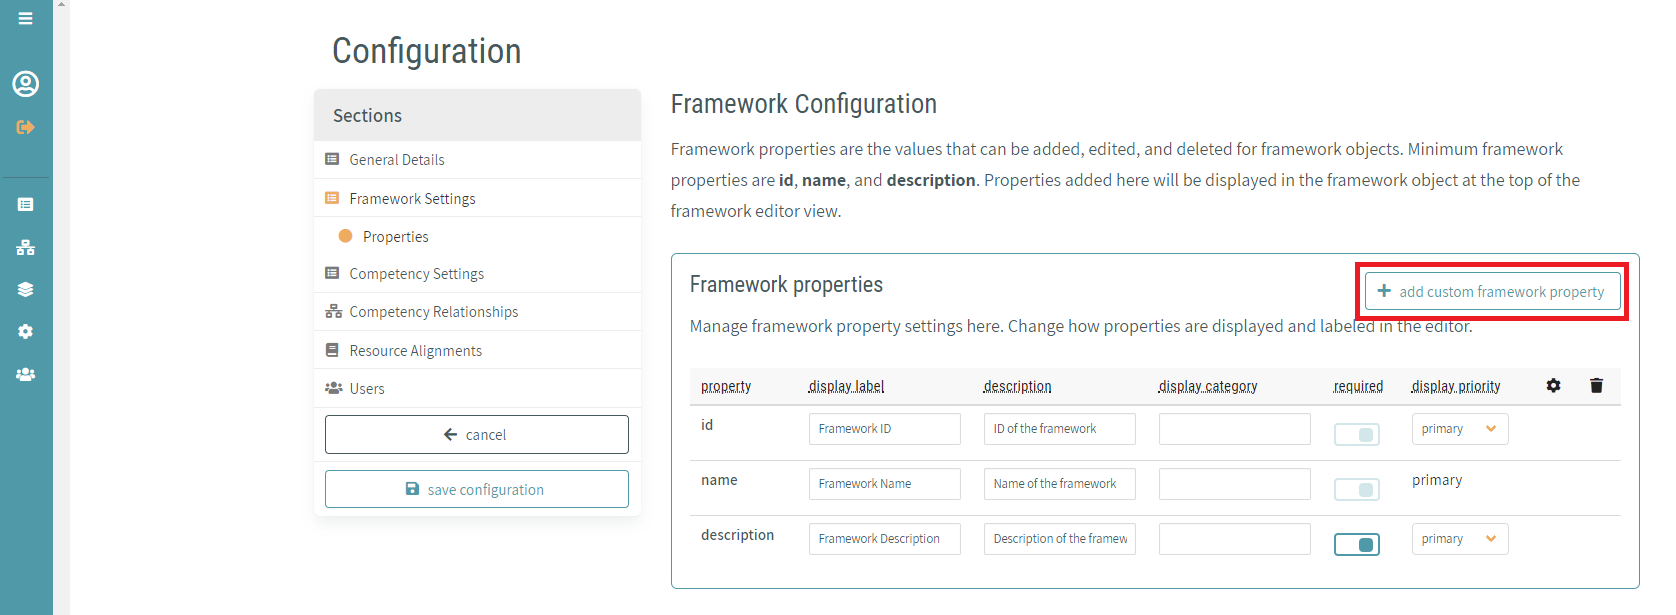 Add Custom Framework Property